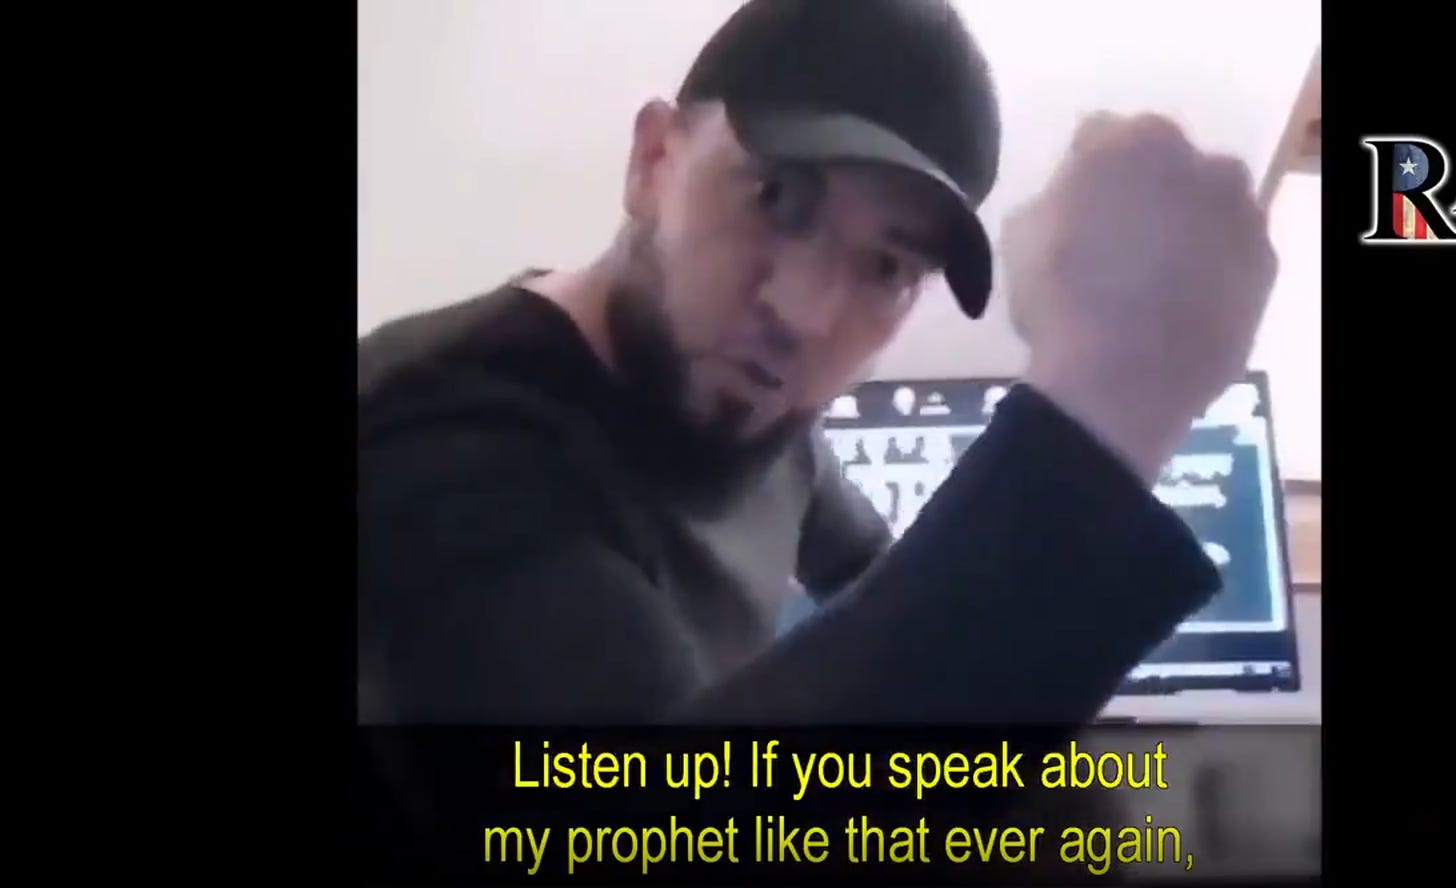 Noin 30 vuotias muslimimies uhkaa videolla tappavansa kenet tahansa, joka ei ylistä hänen profeettaansa.